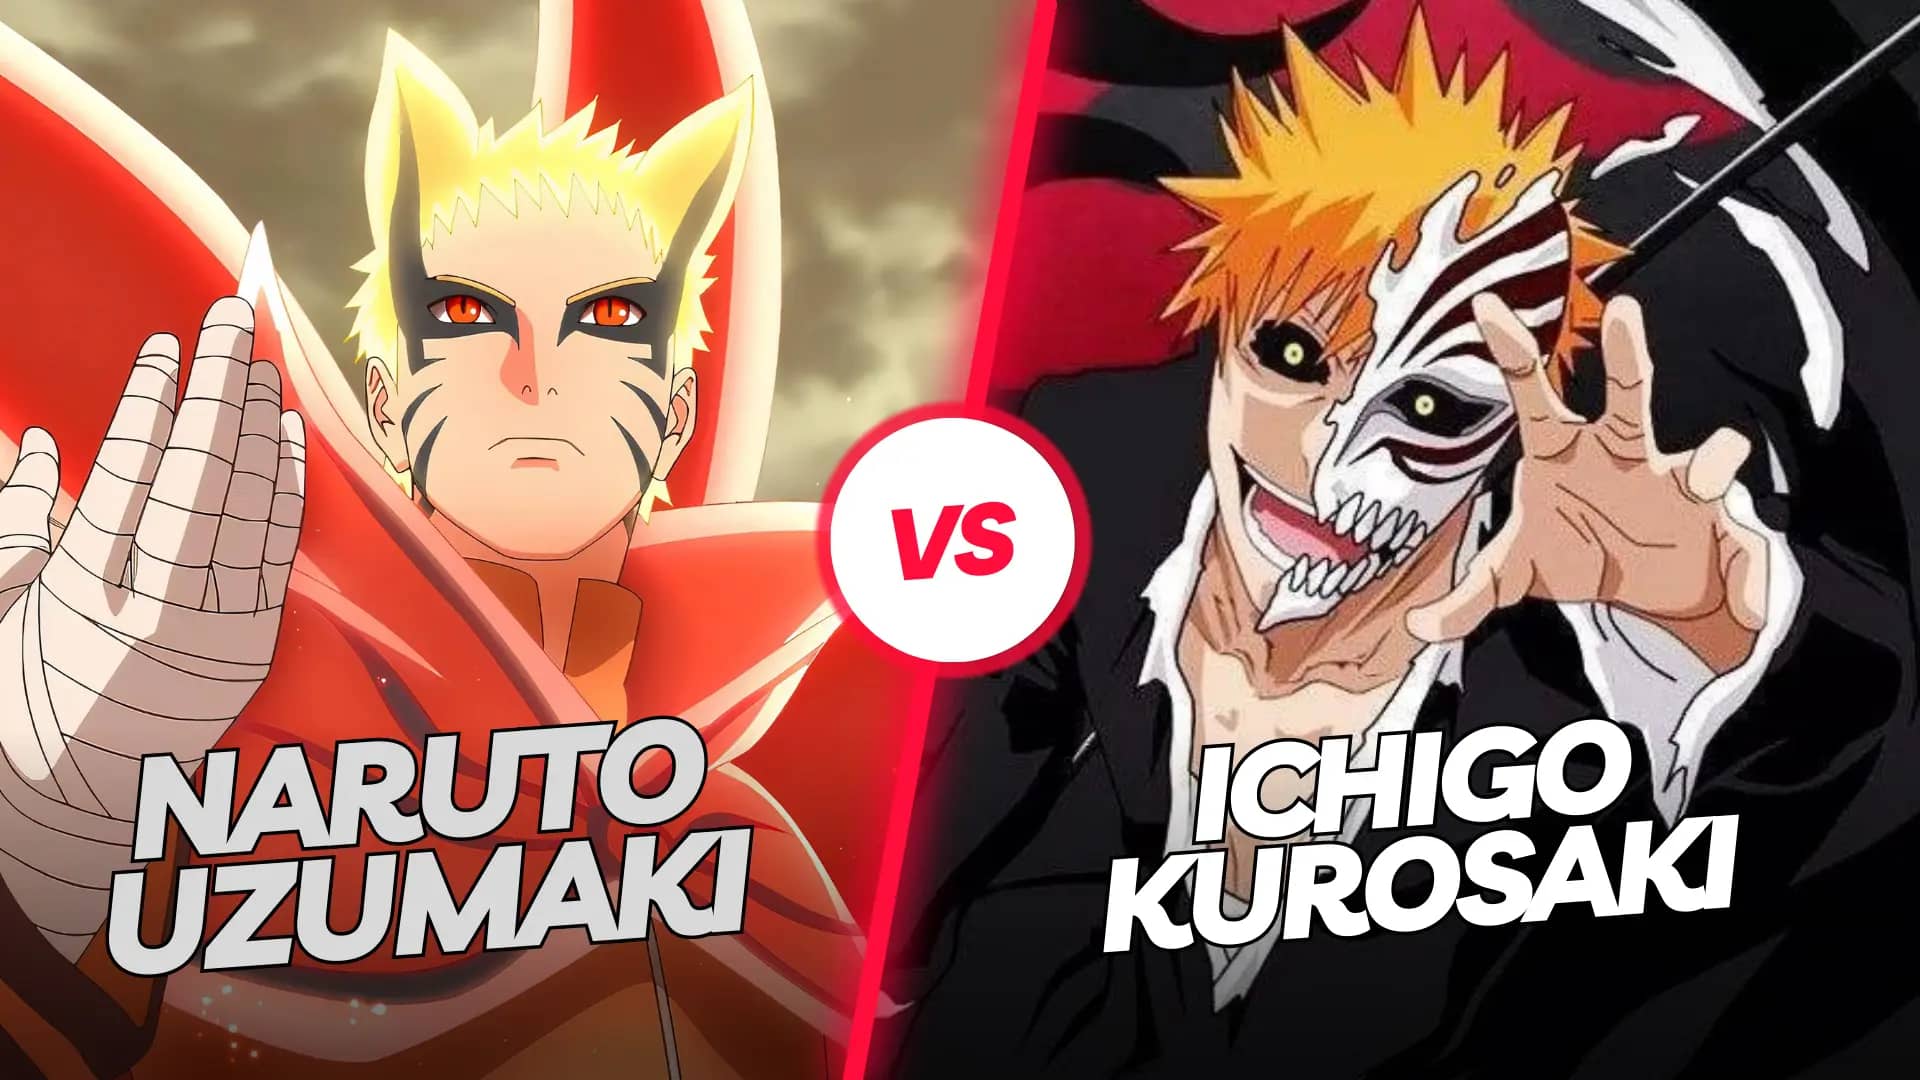 Naruto Uzumaki vs Ichigo Kurosaki- Who is stronger